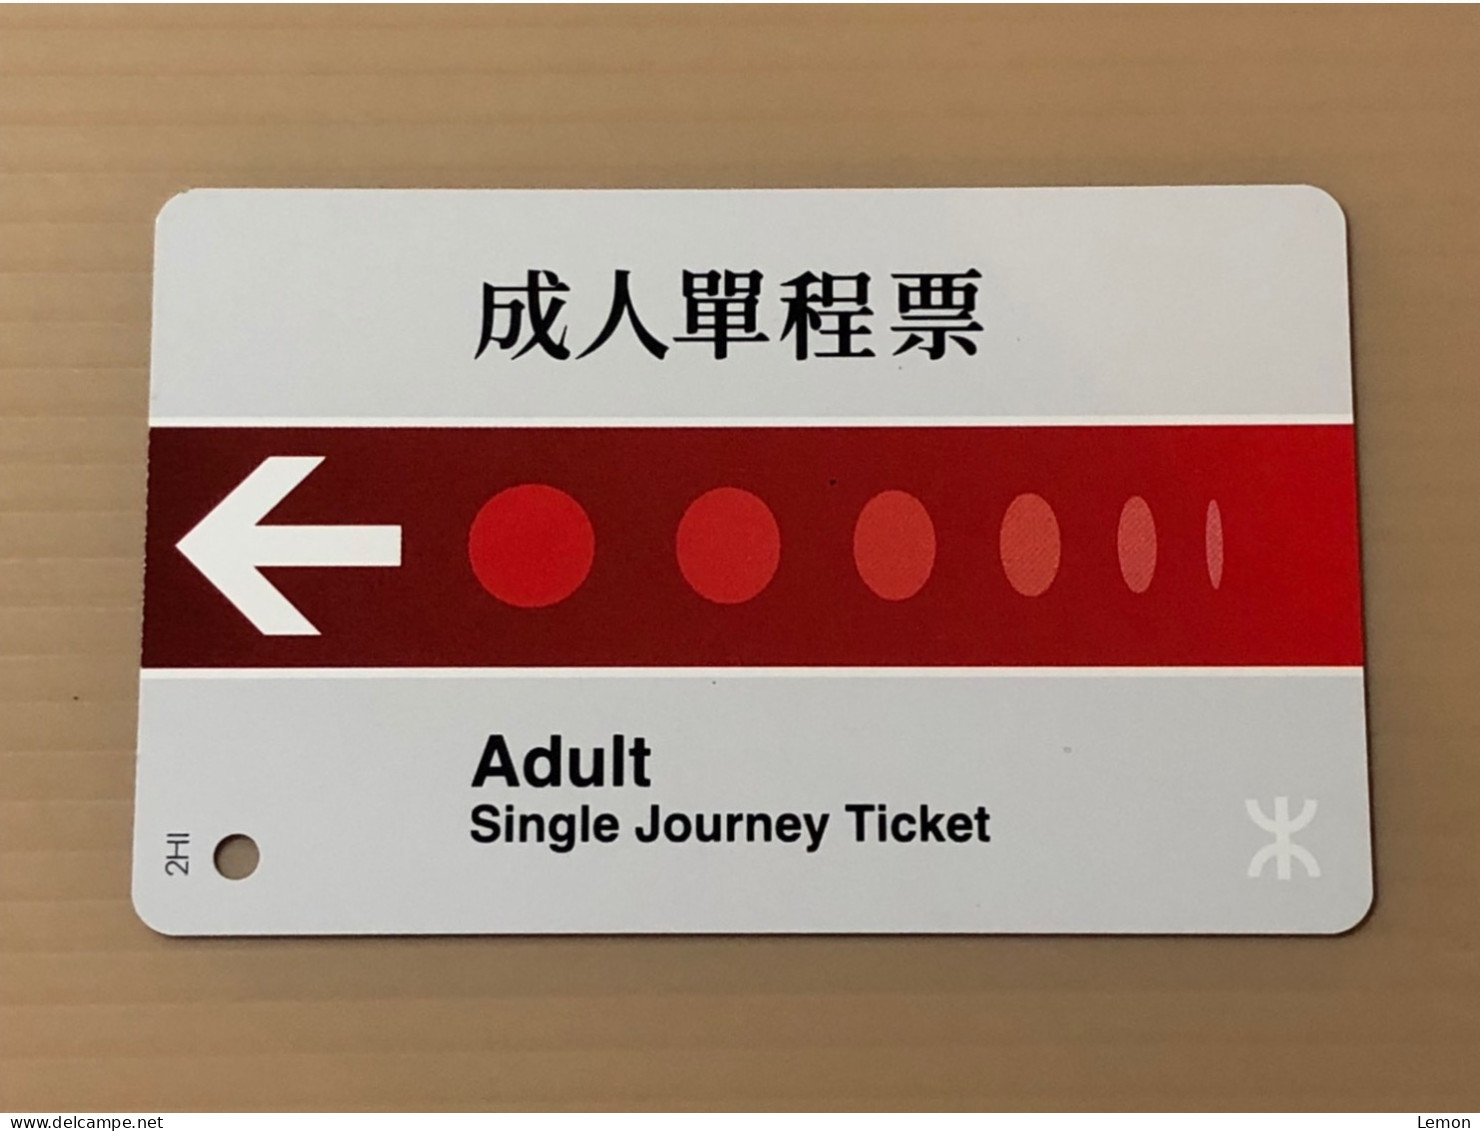 Hong Kong MTR Rail Metro Train Subway Ticket Card, Single Journey Ticket 2HI, Set Of 1 Used Card - Hong Kong